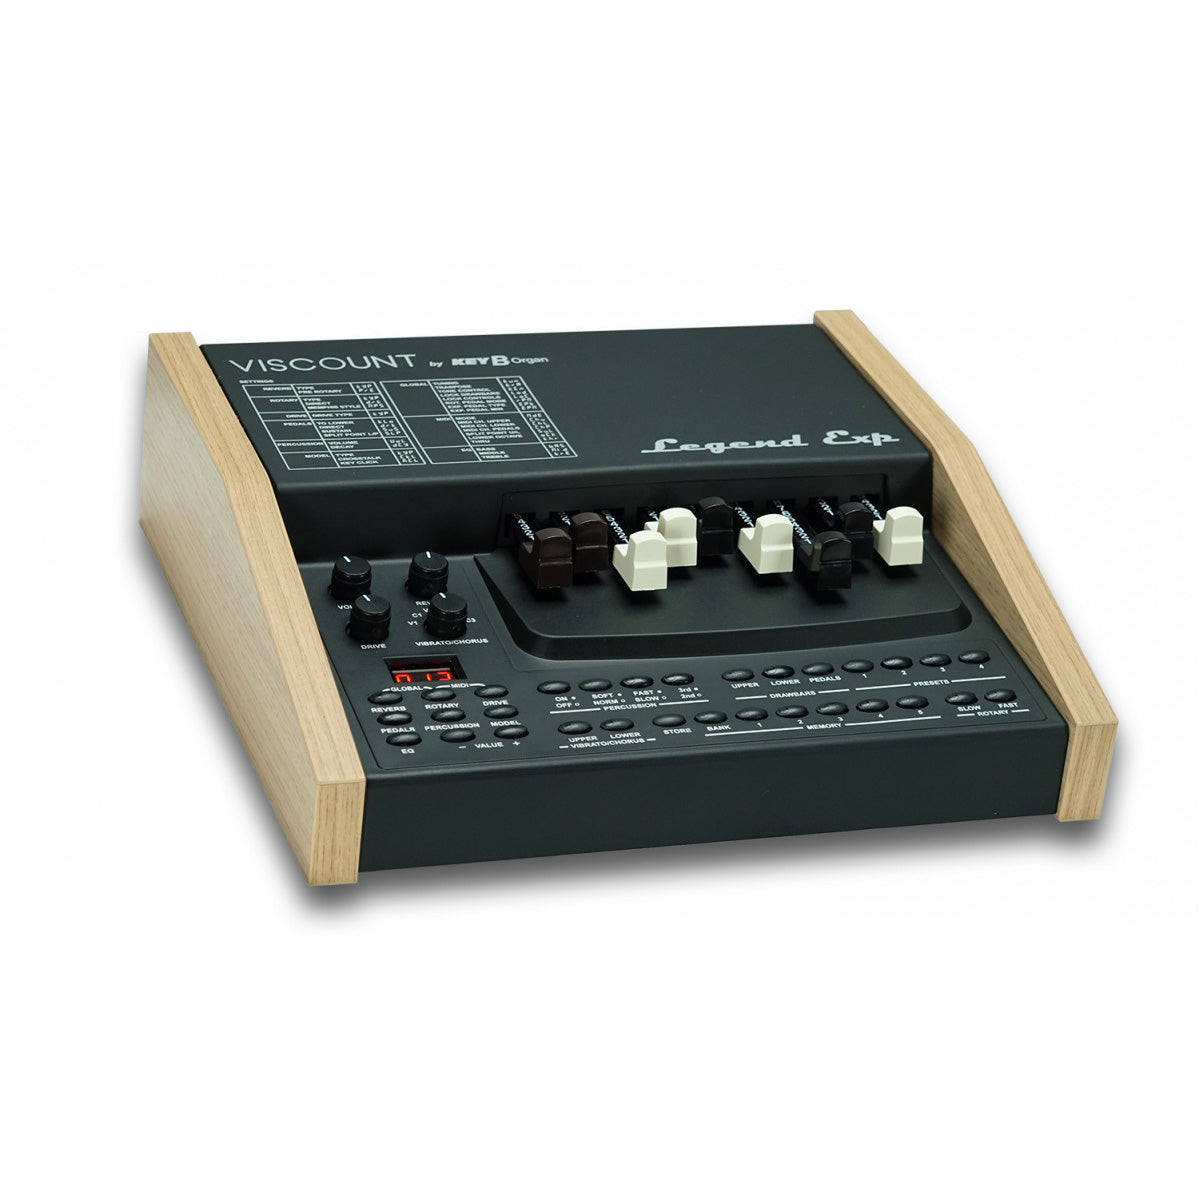 Viscount Legend Exp Organ Sound Module CABLE KIT